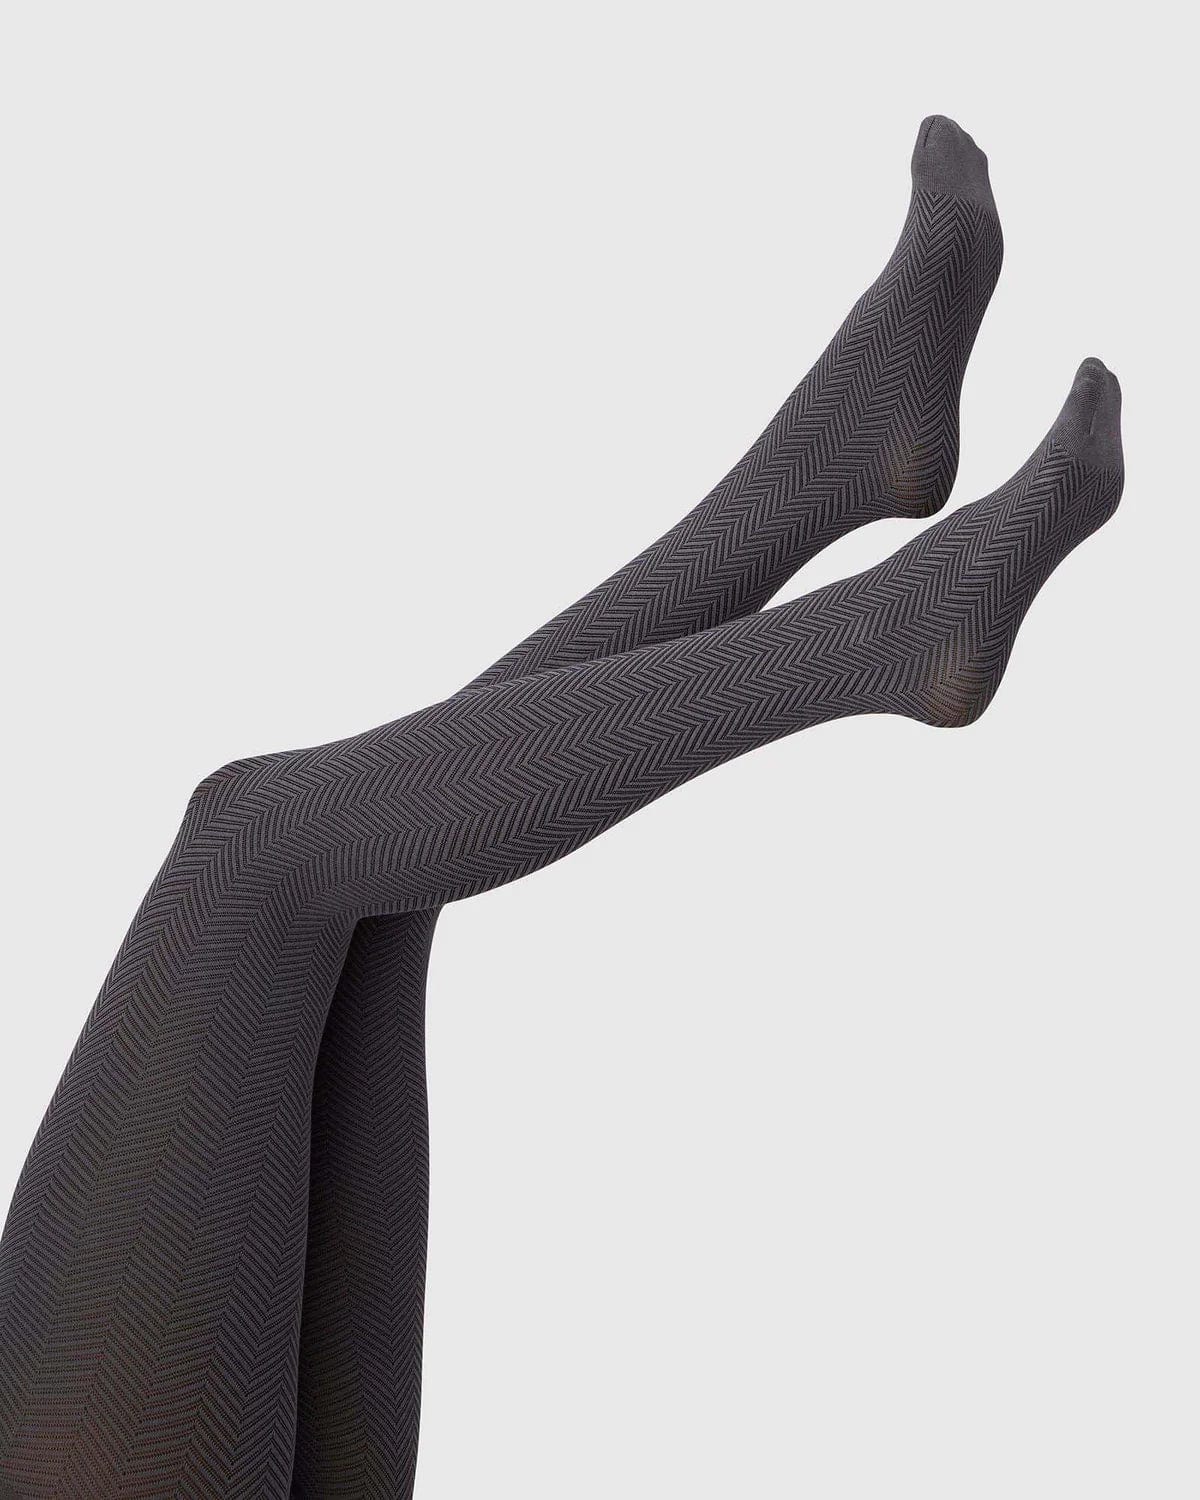 Hedda Chevron Tights Socks Swedish Stockings   